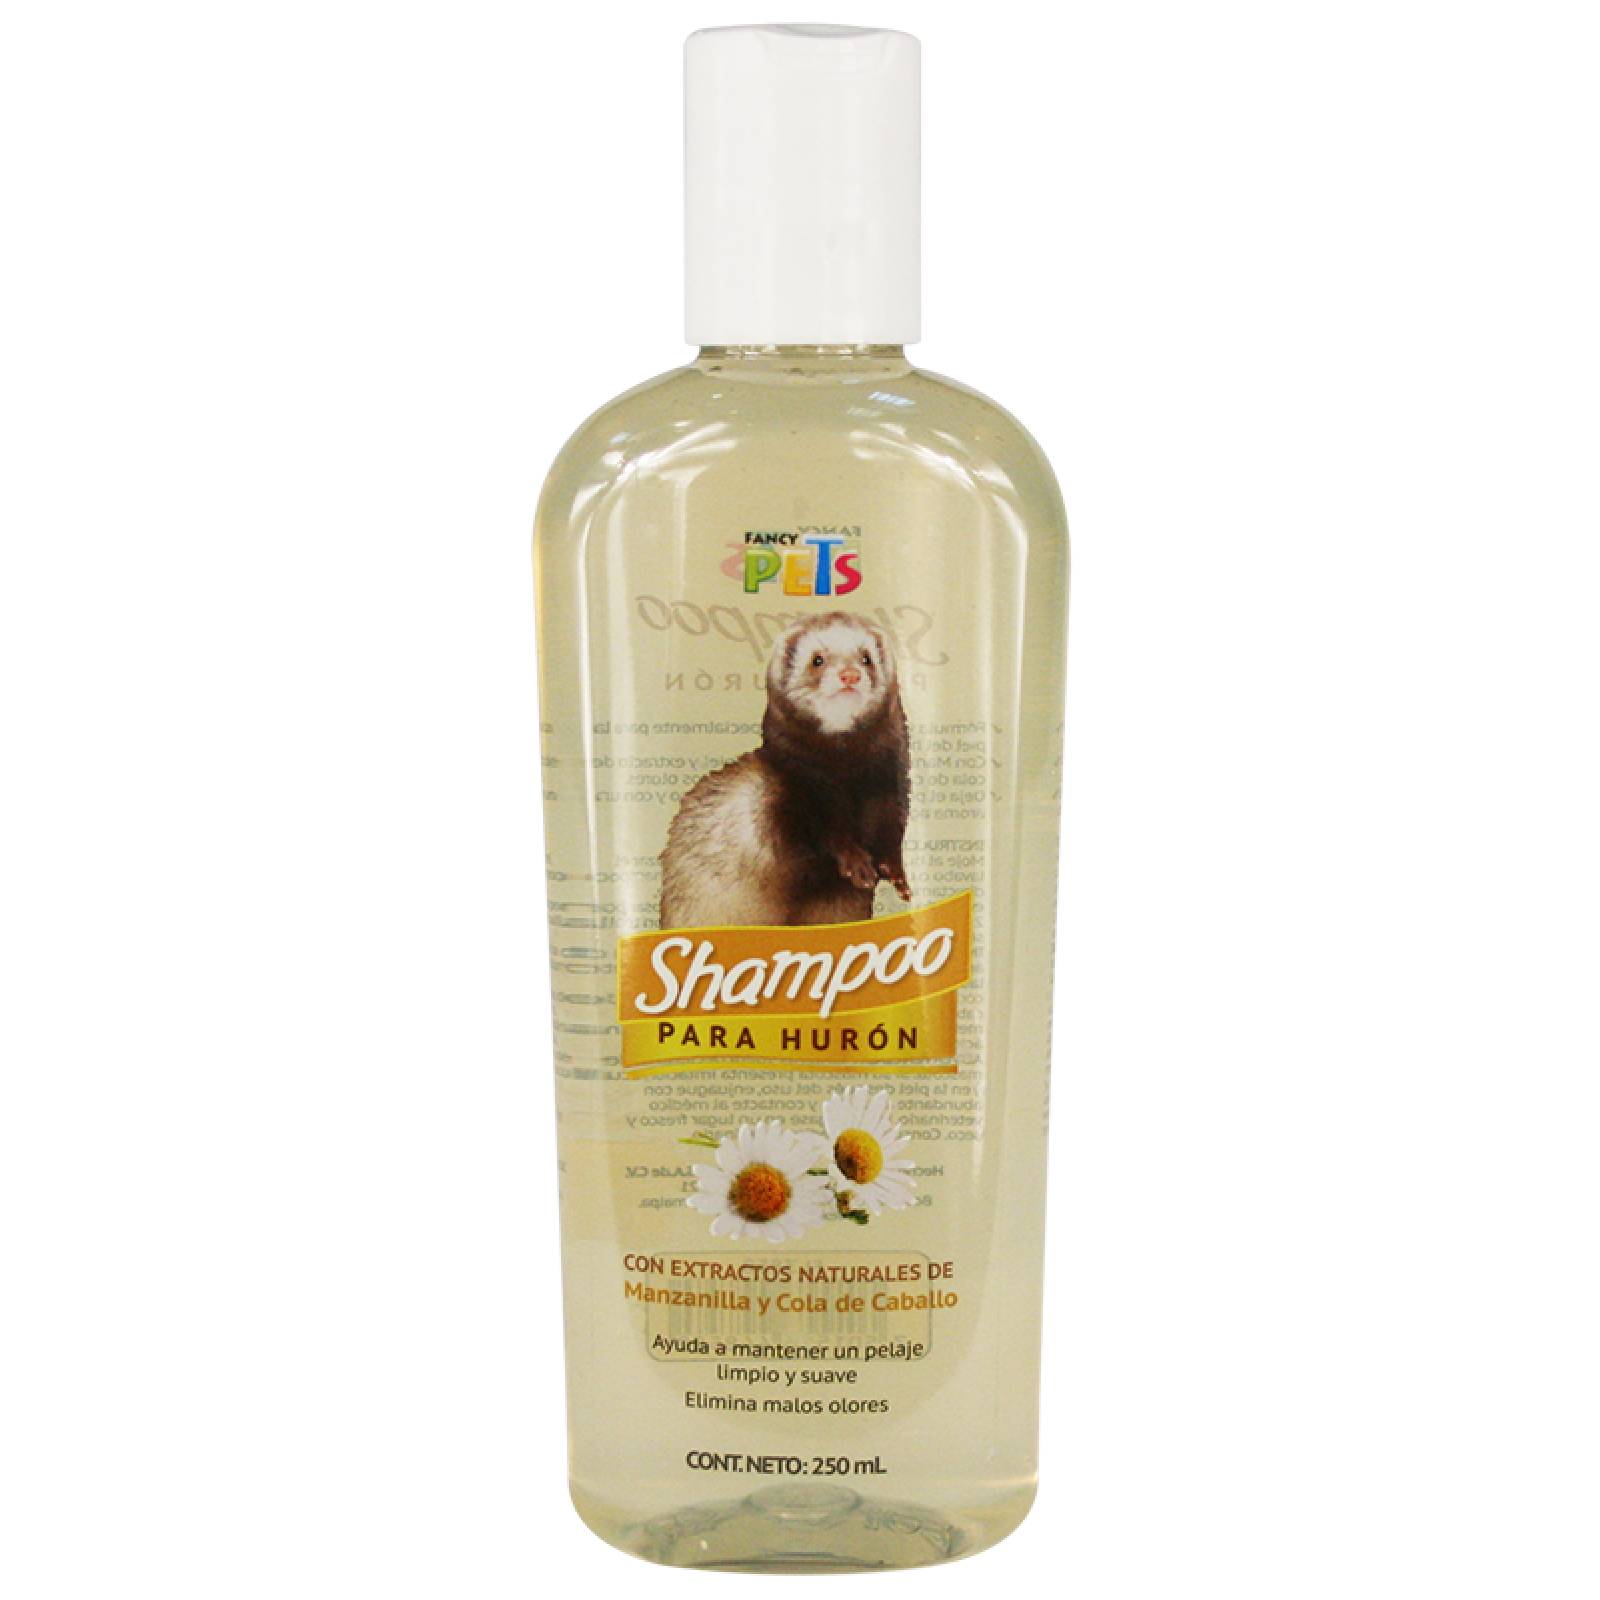 Fancy Pets Shampoo para hurón con extractos naturales de Manzanilla y Cola de Caballo.